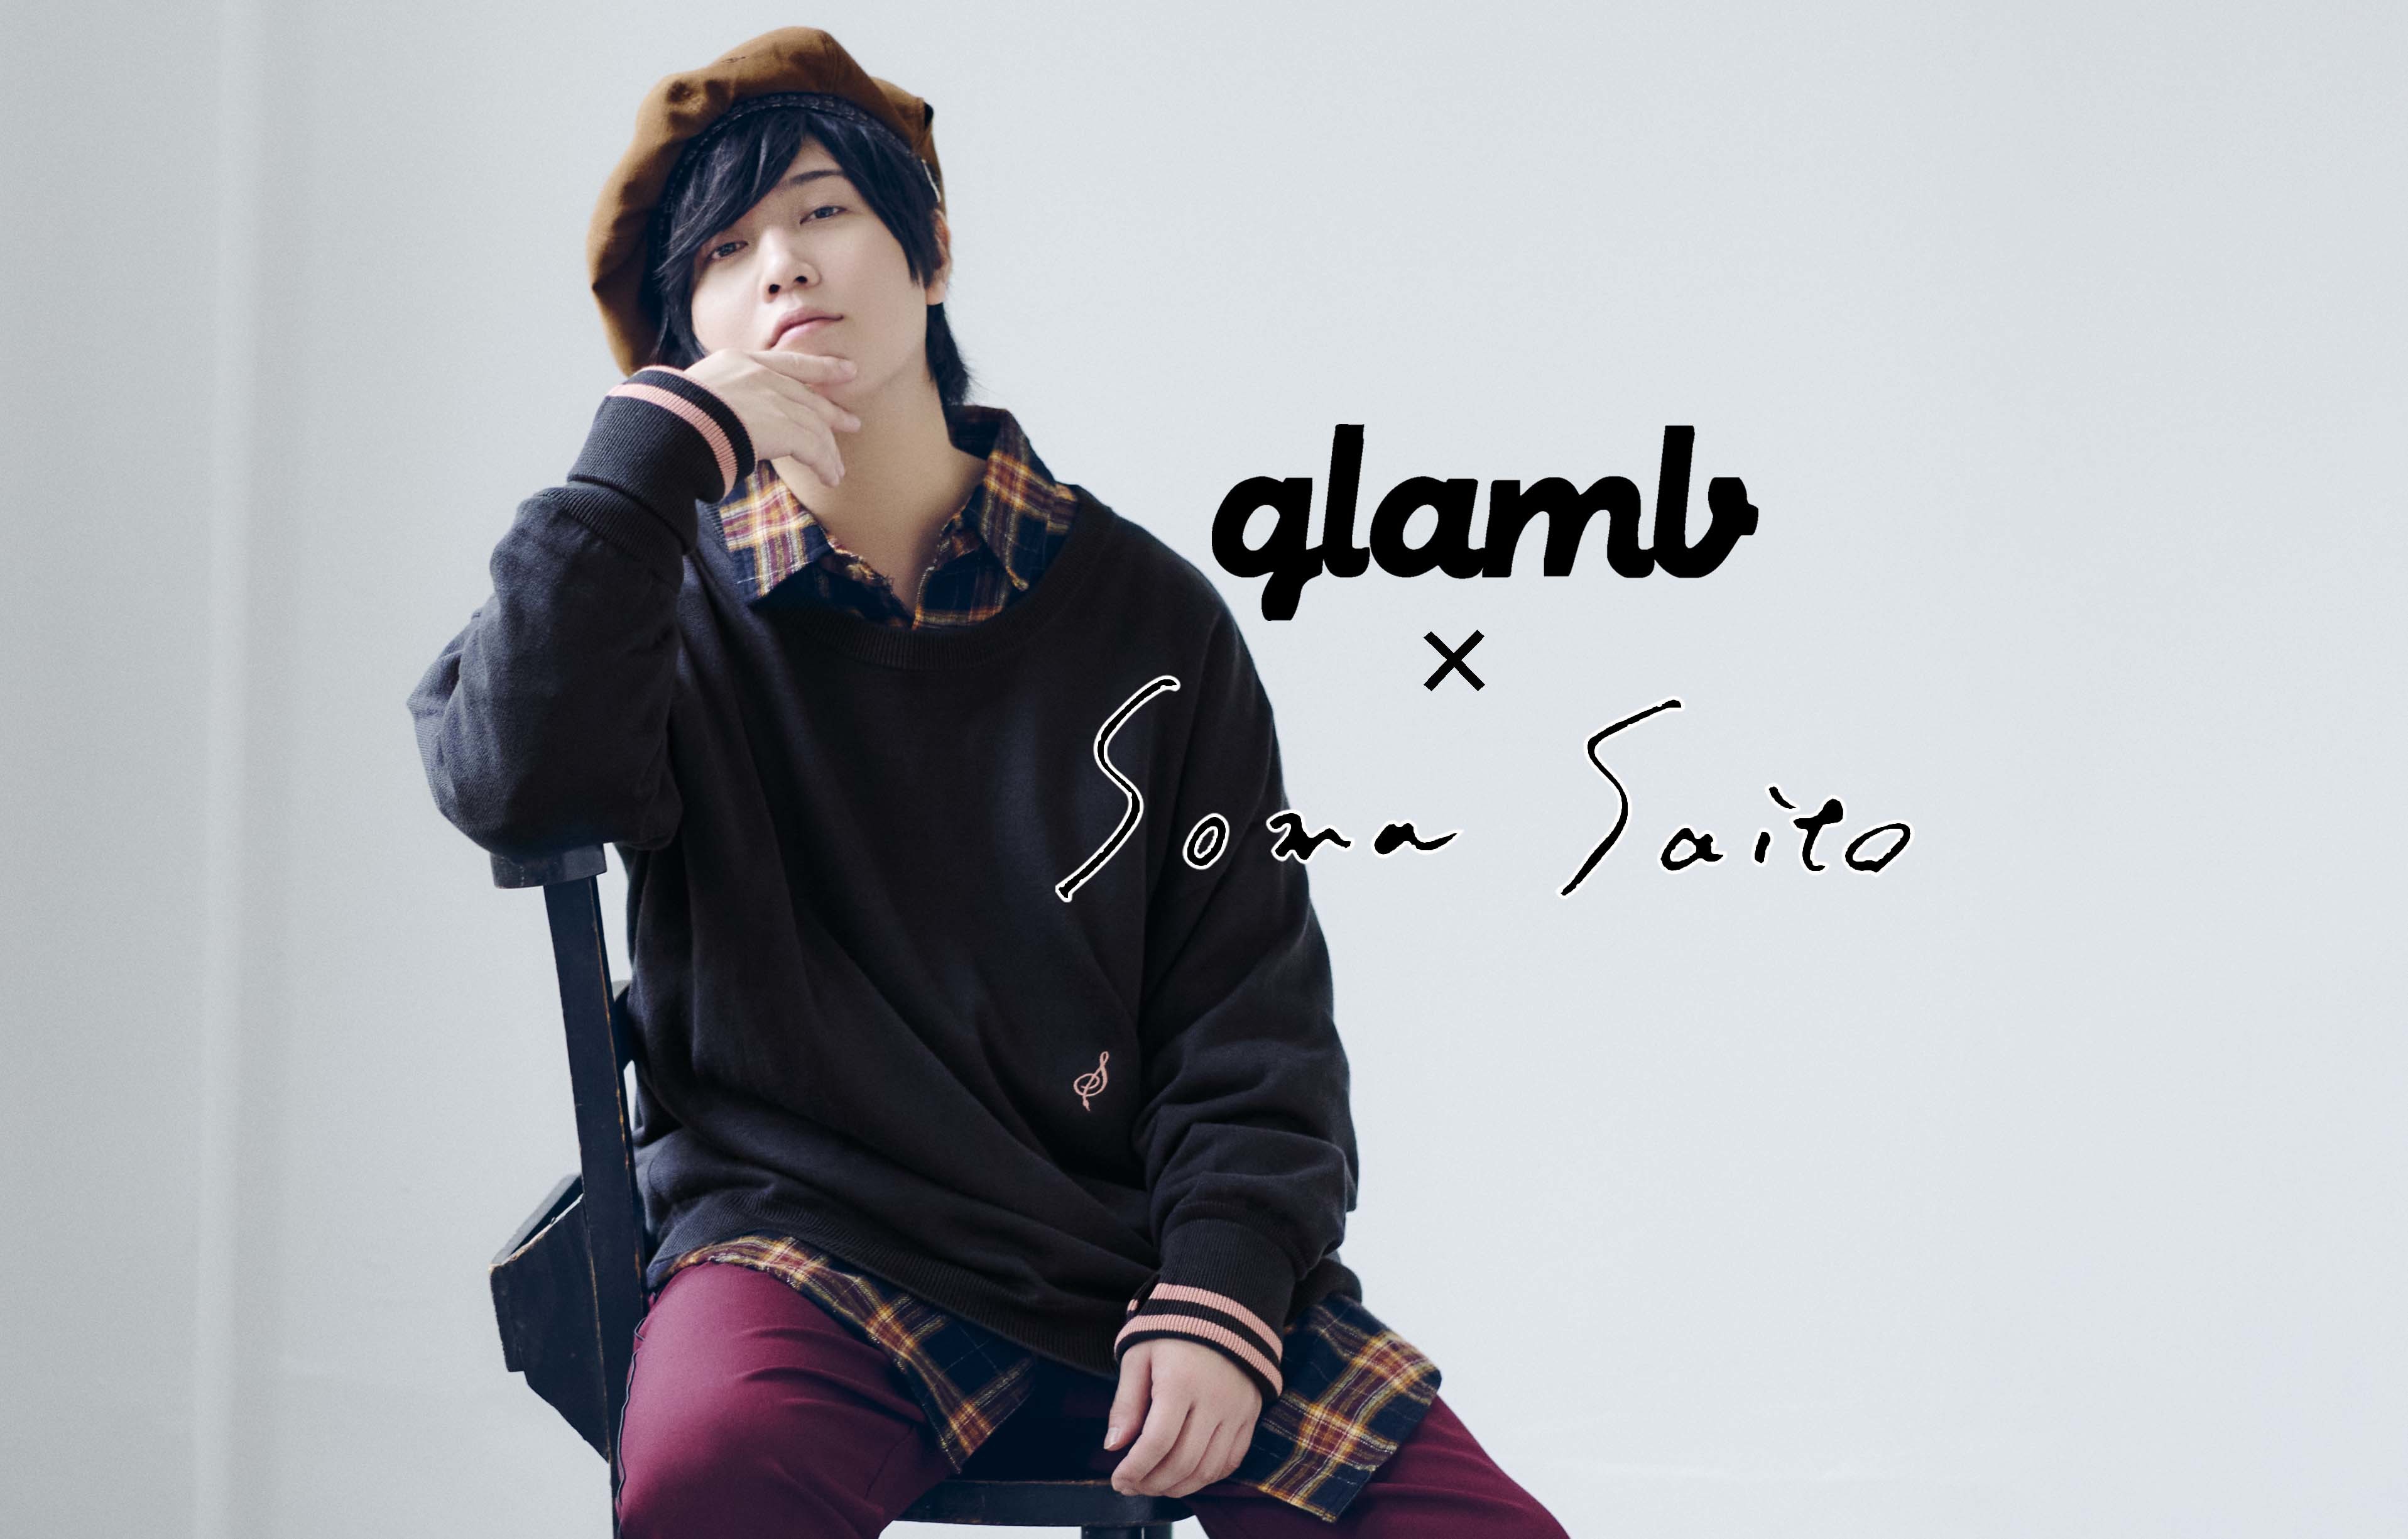 斉藤壮馬、アパレルプロデュースが実現 「glamb」とコラボで制作した 